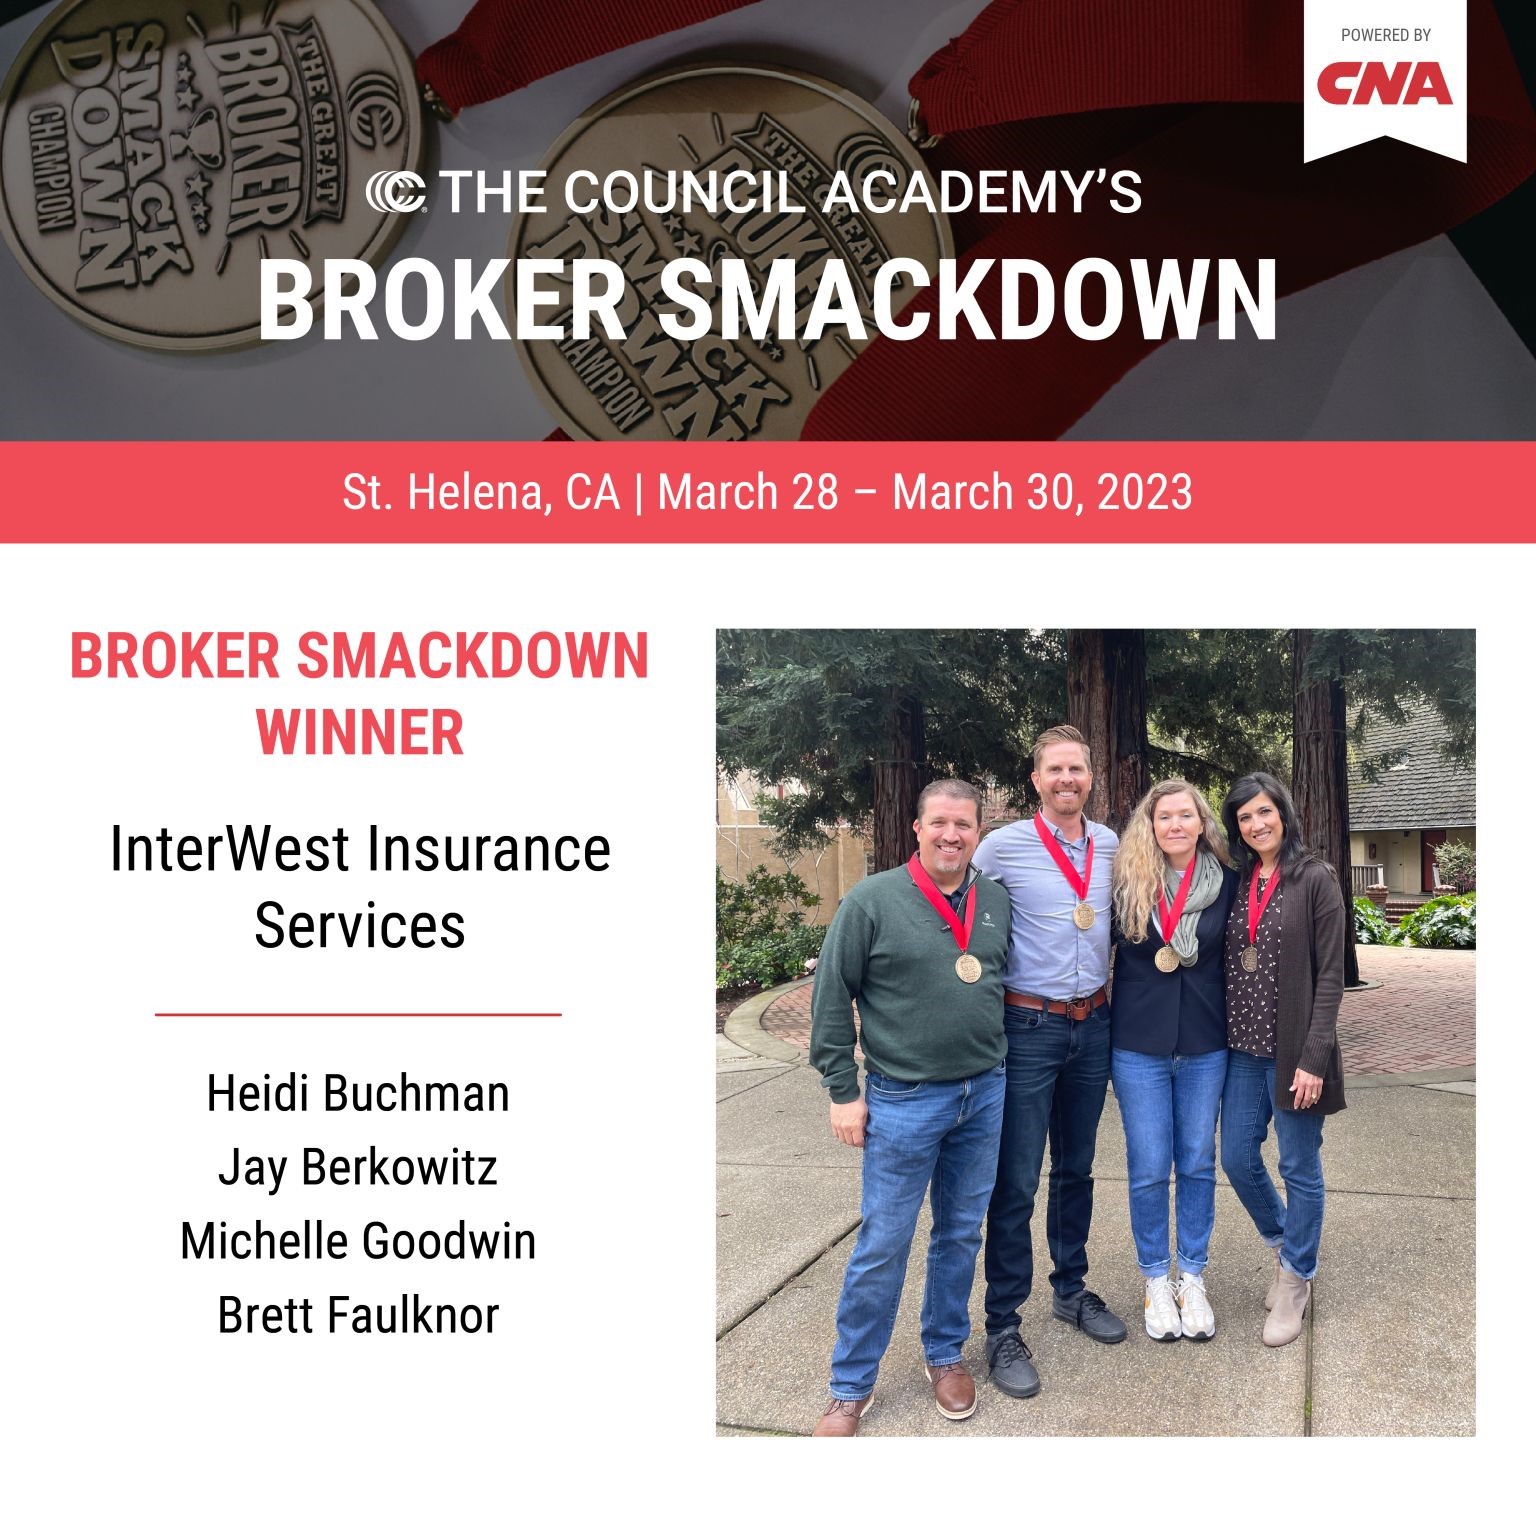 broker smackdown winners marsh 28 march 30 2023